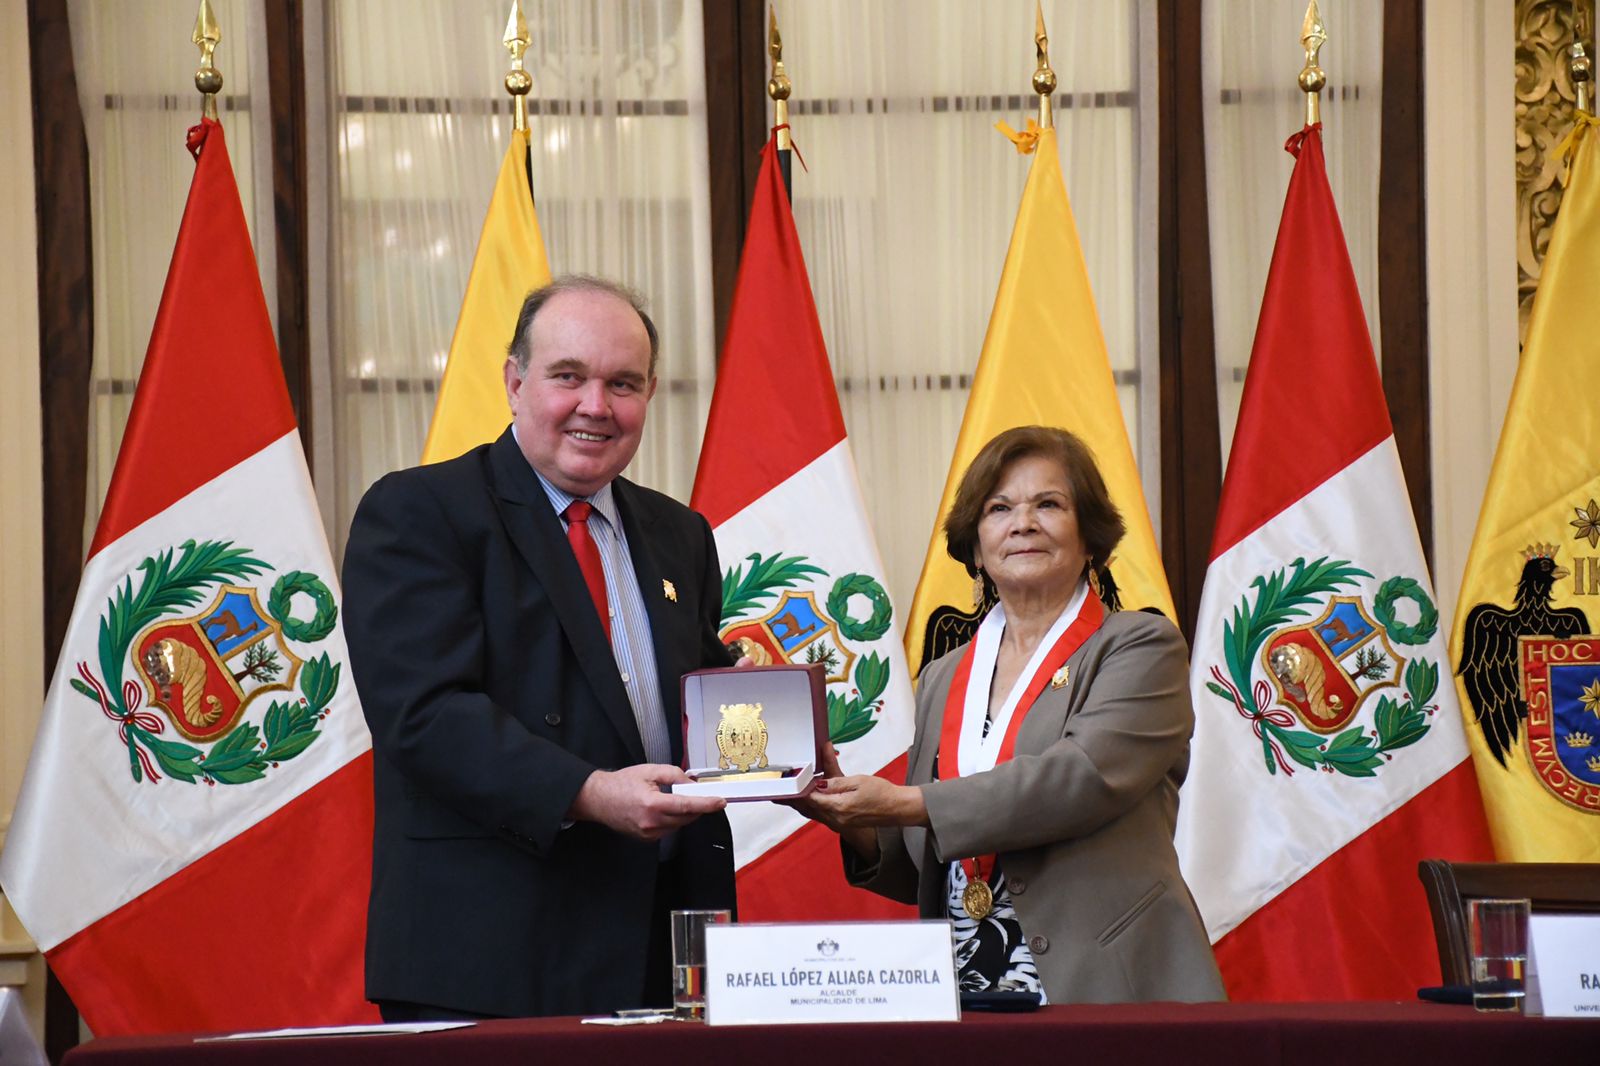 Universidad Nacional Mayor de San Marcos firma convenio de voluntariado con la Municipalidad de Lima.